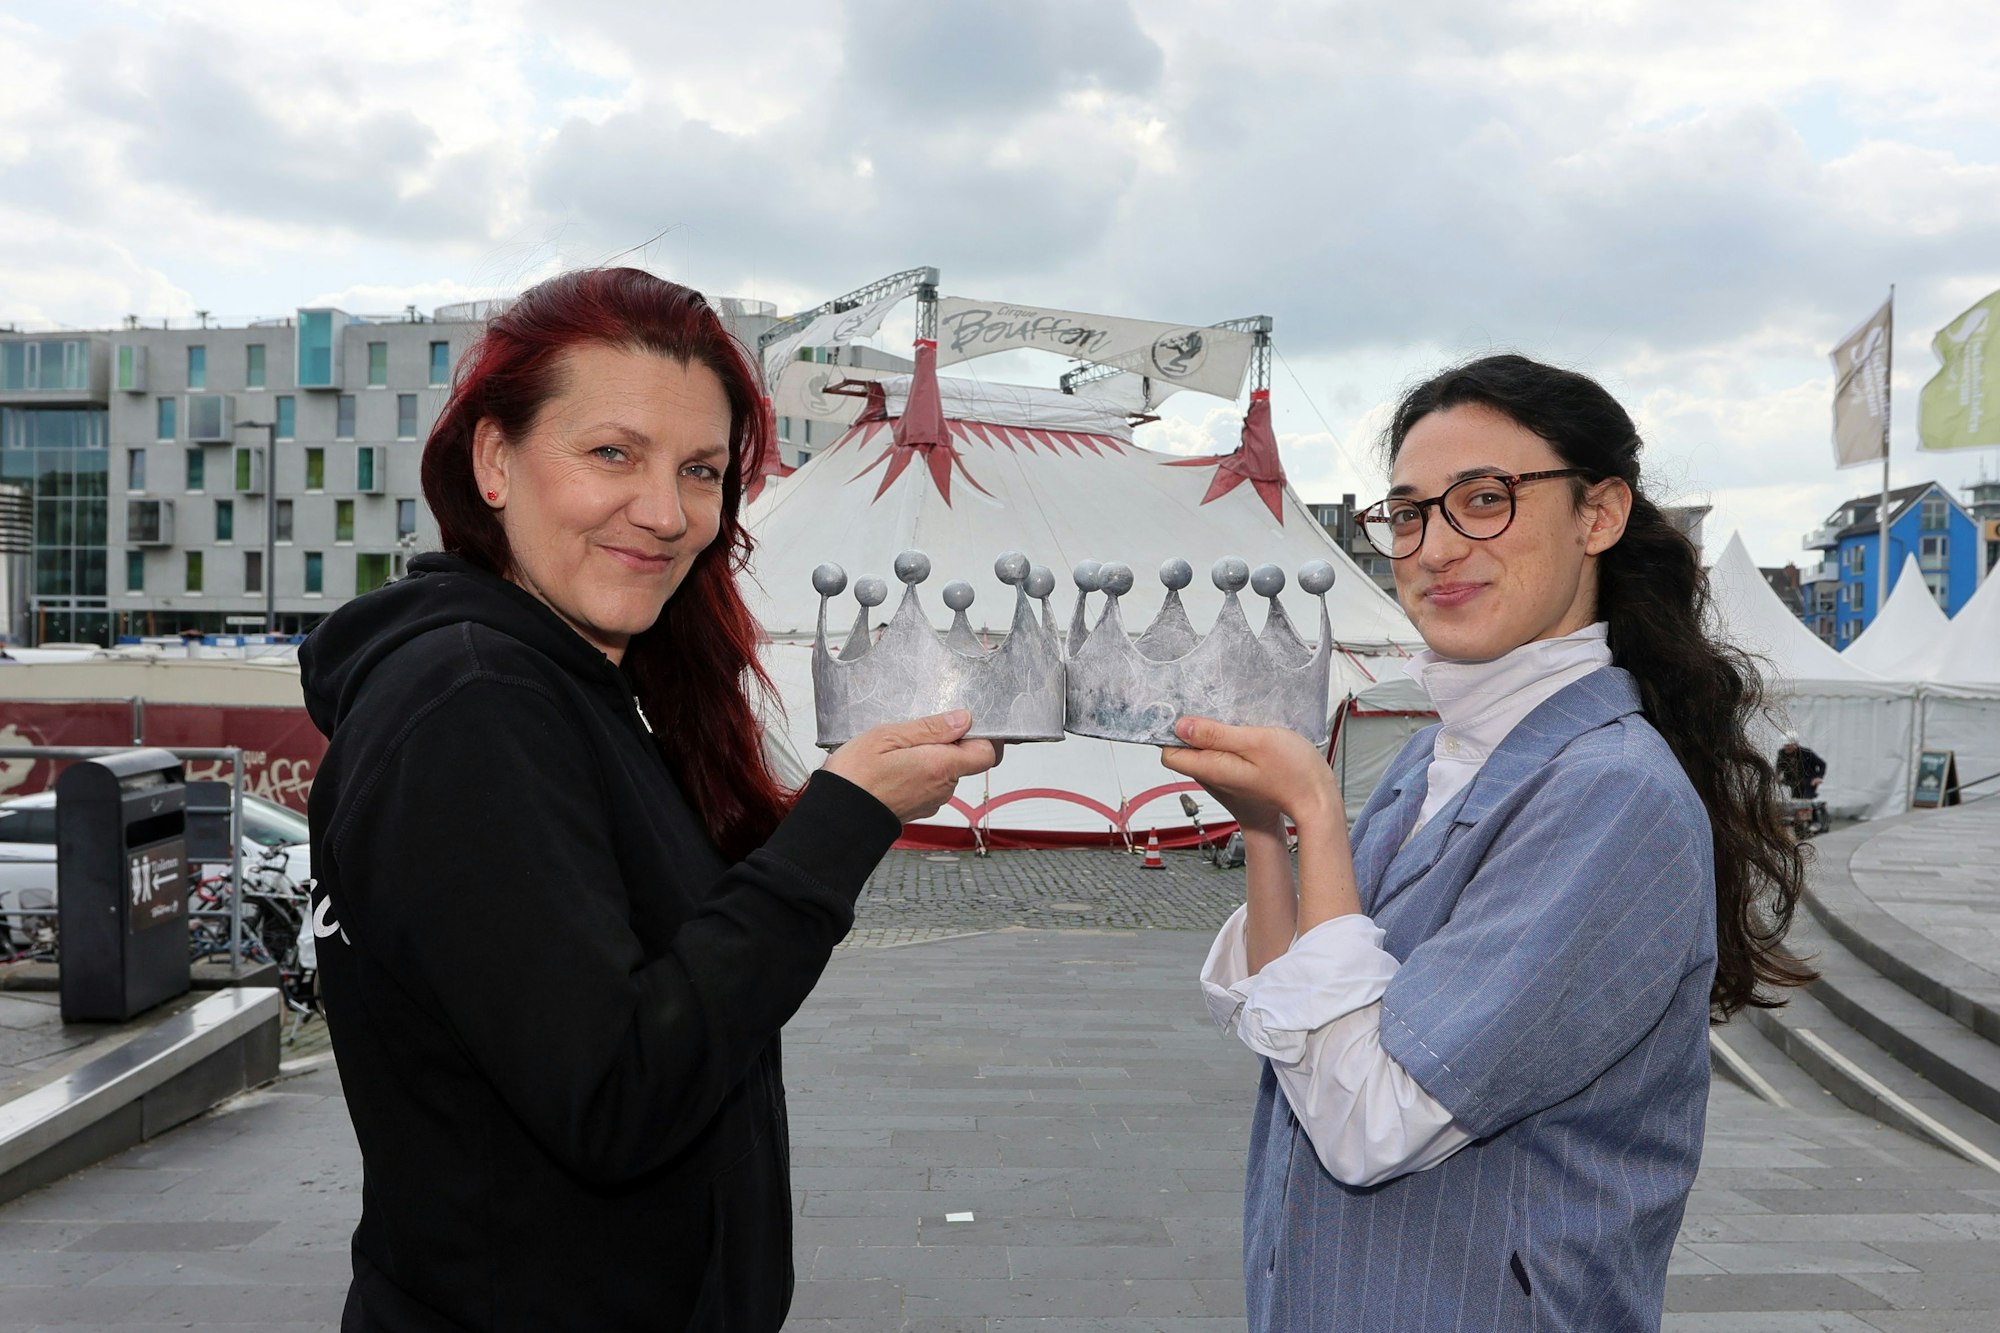 Anja Krips und Noémie Pichereau halten zwei Kronen und stehen sich damit gegenüber.